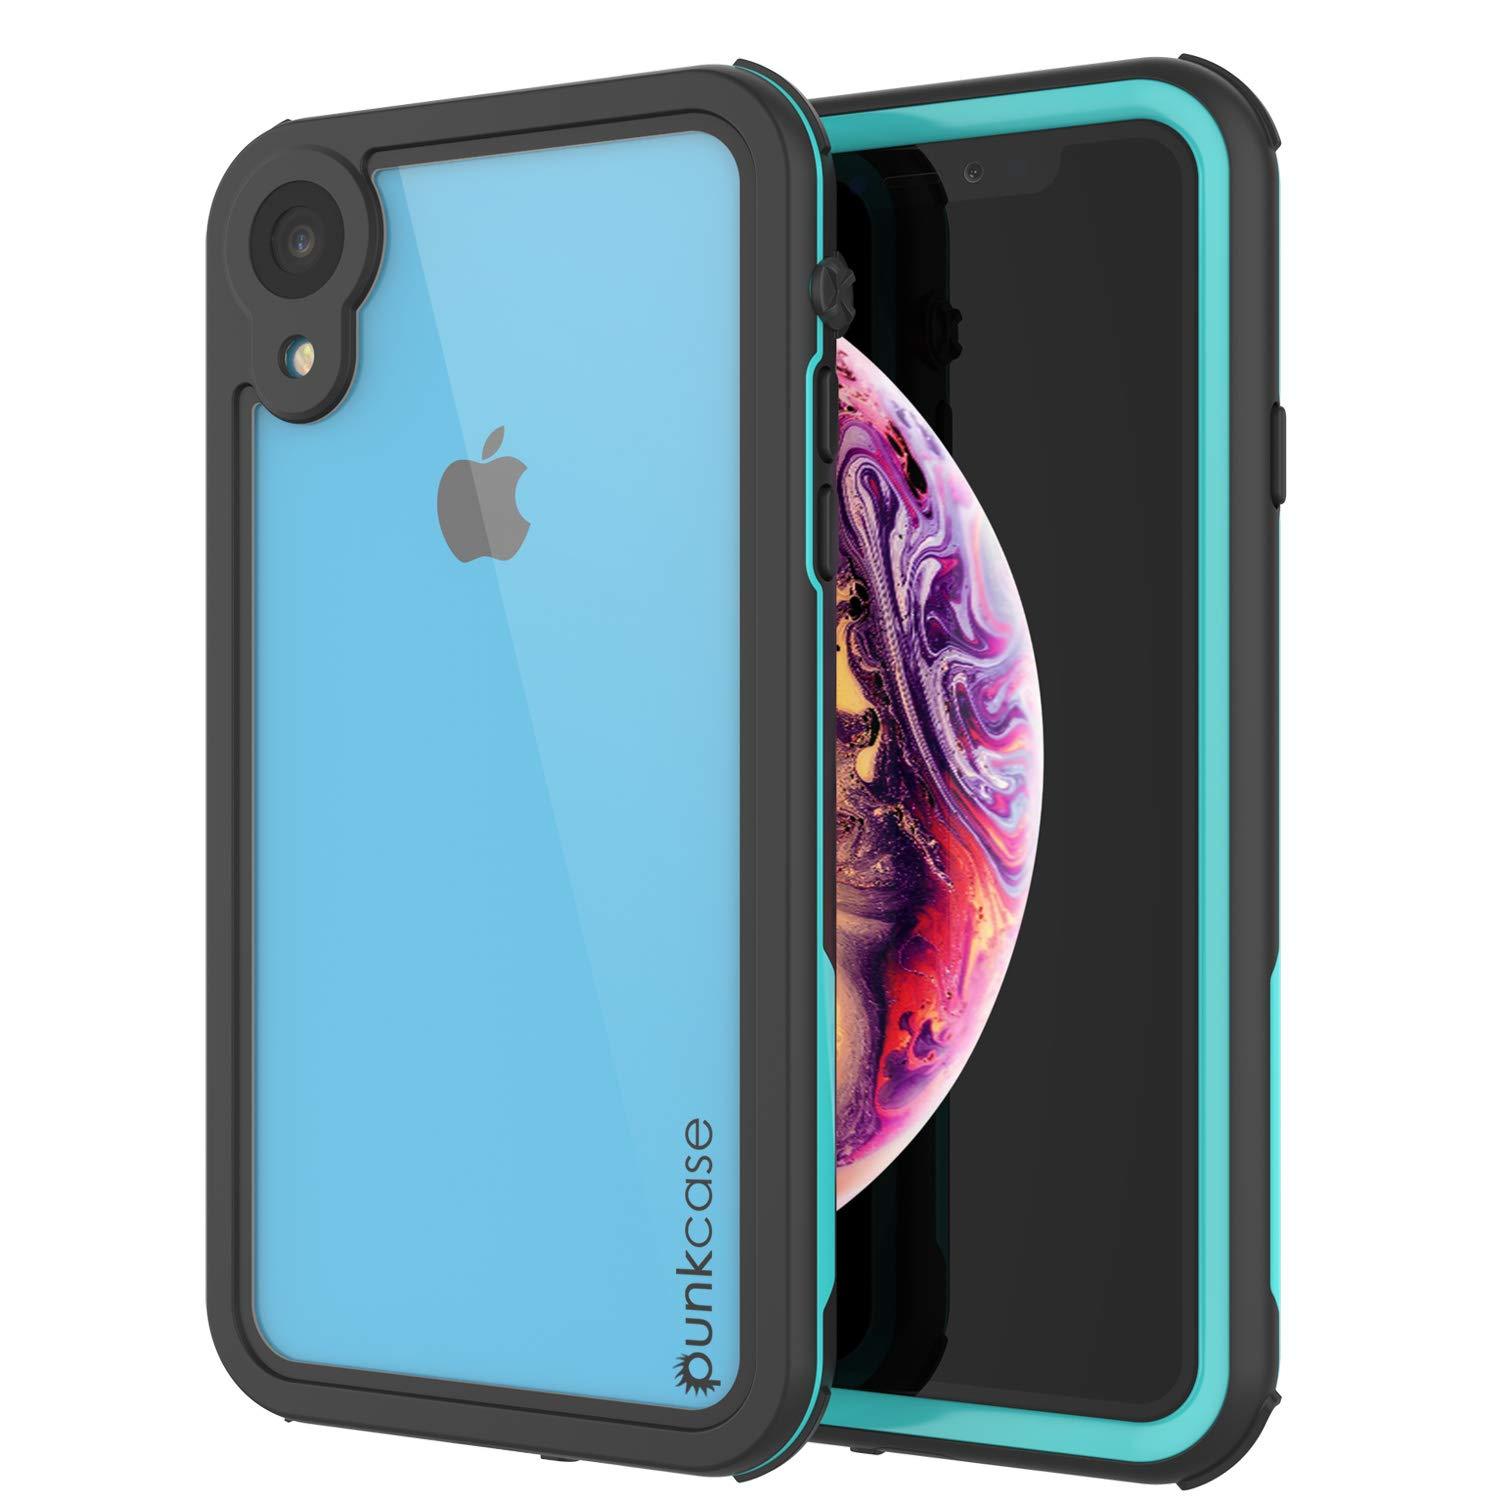 iPhone XR Waterproof IP68 Case, Punkcase [teal] [Rapture Series]  W/Built in Screen Protector